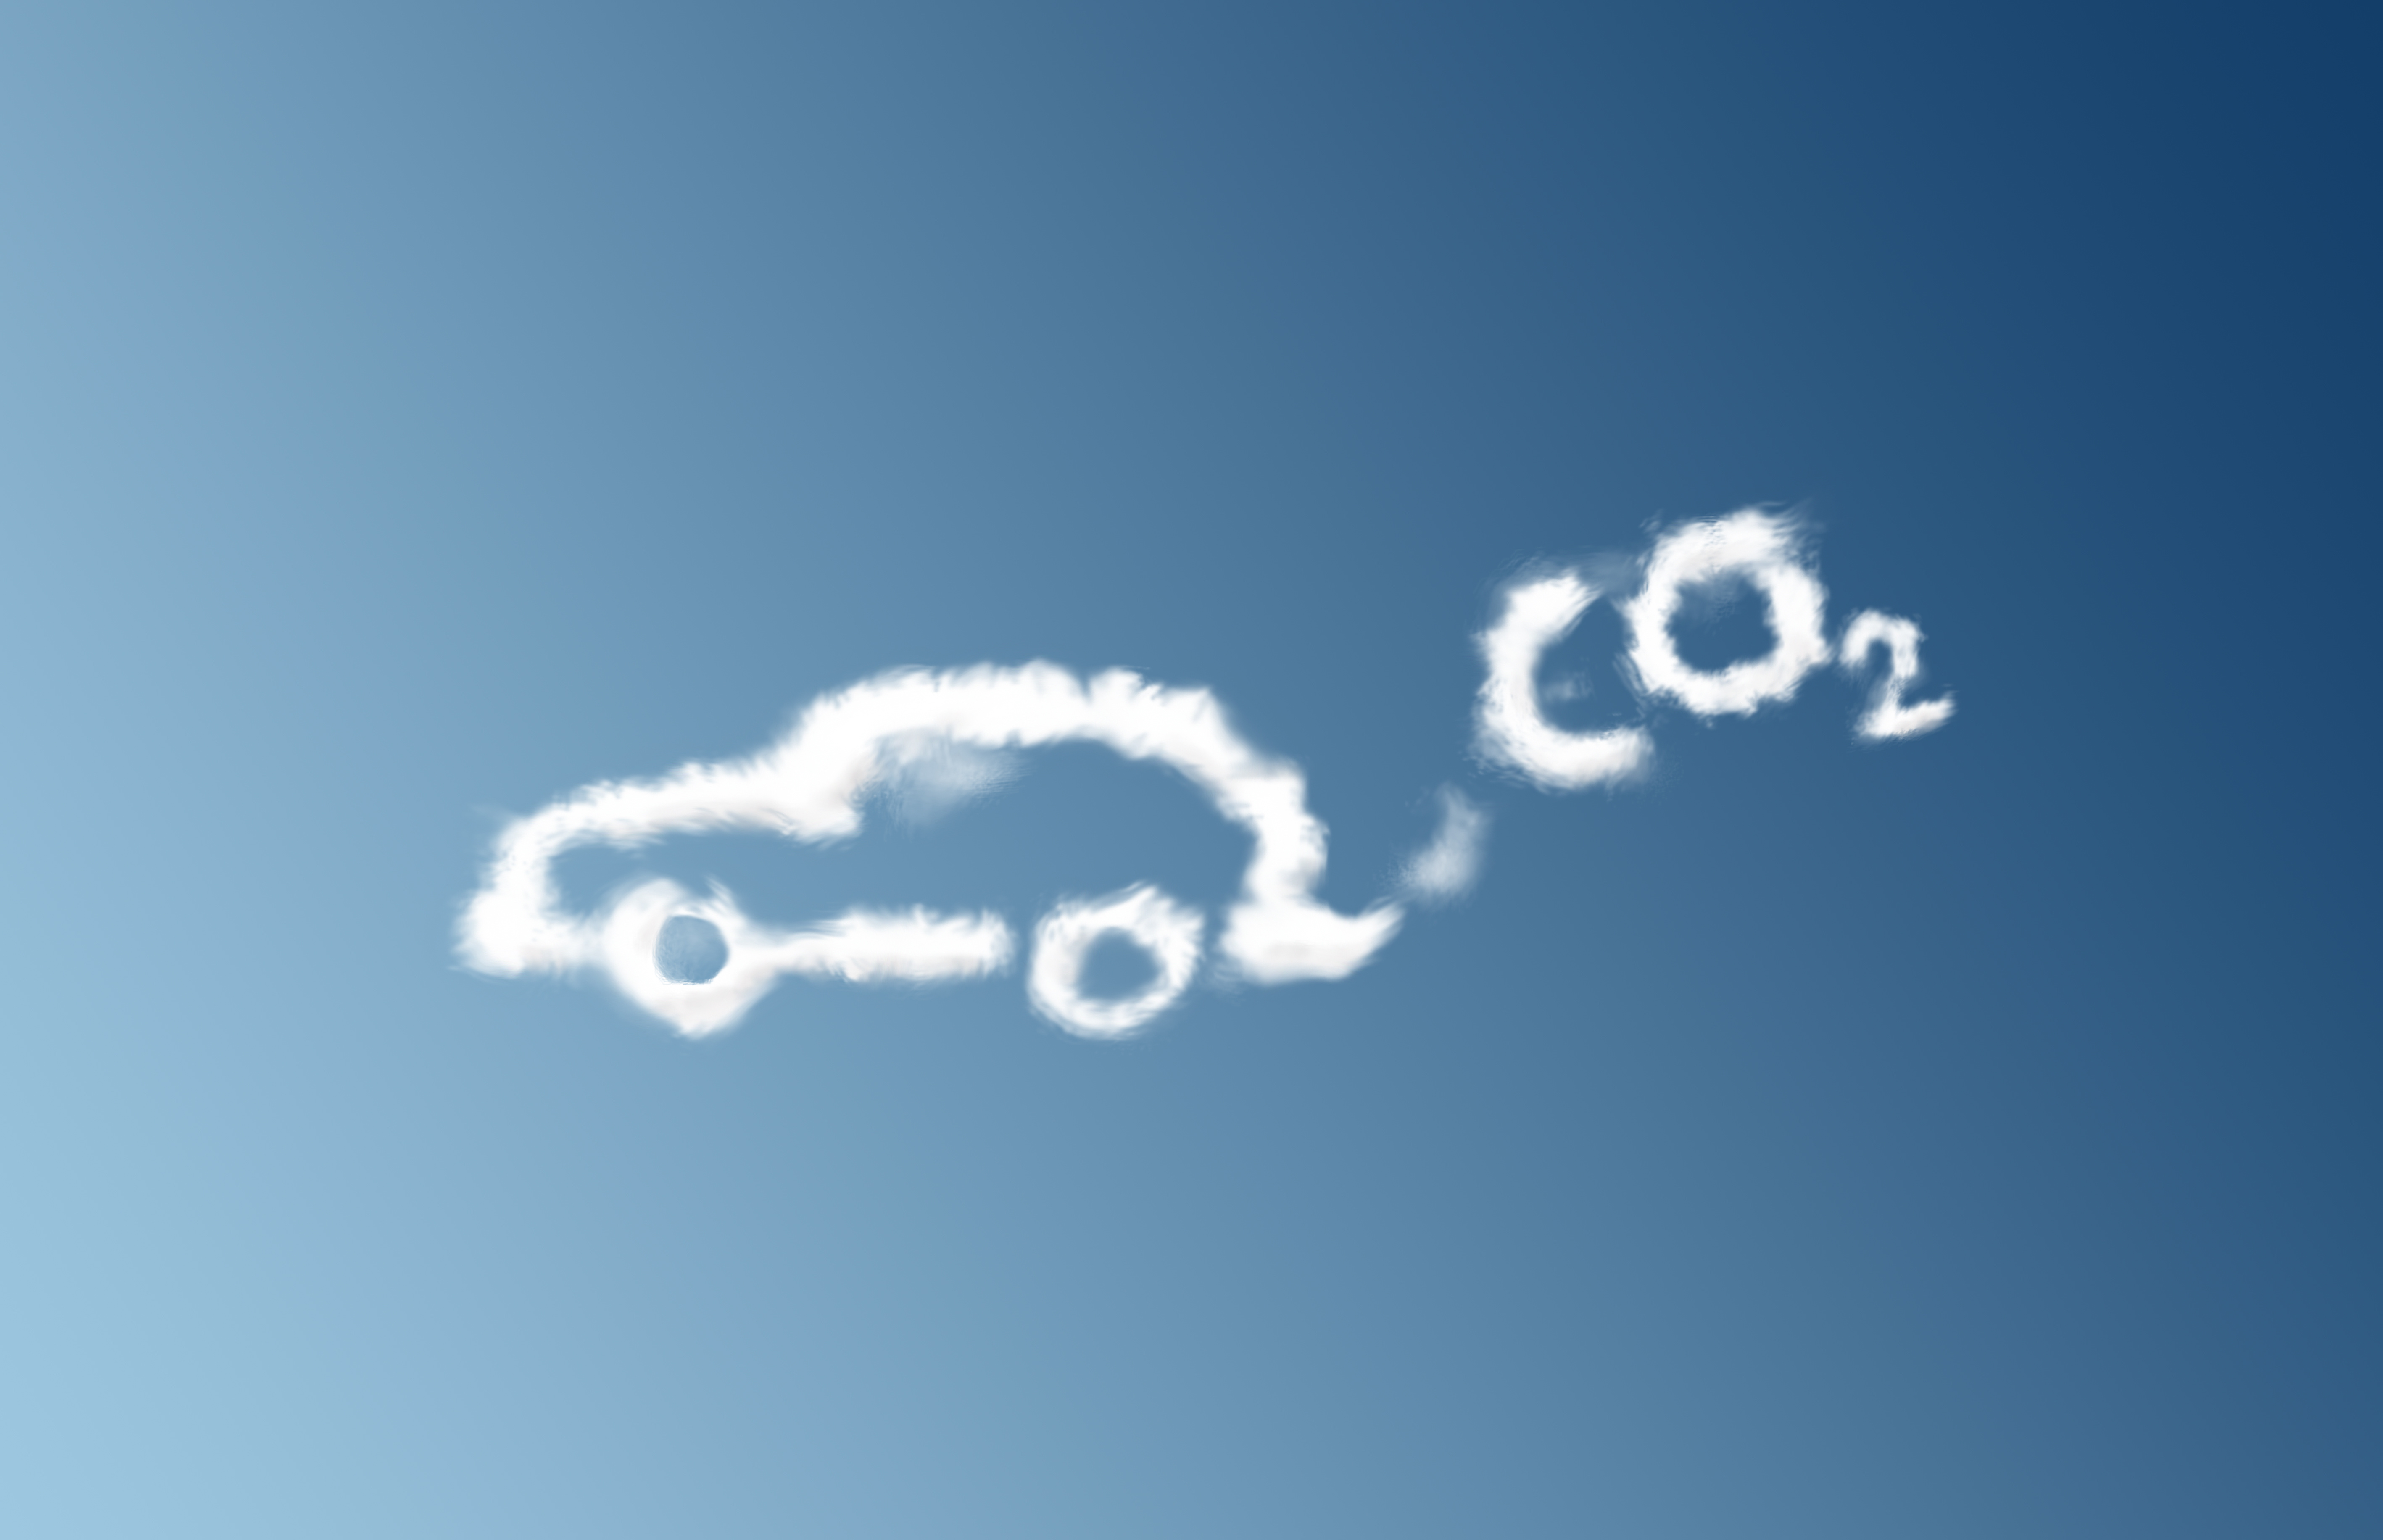 Co2 запах газа. Co2 углекислый ГАЗ. Углекислого газа в воздухе. Углекислый ГАЗ со2. Рисунки выброс углекислого газа в атмосферу.